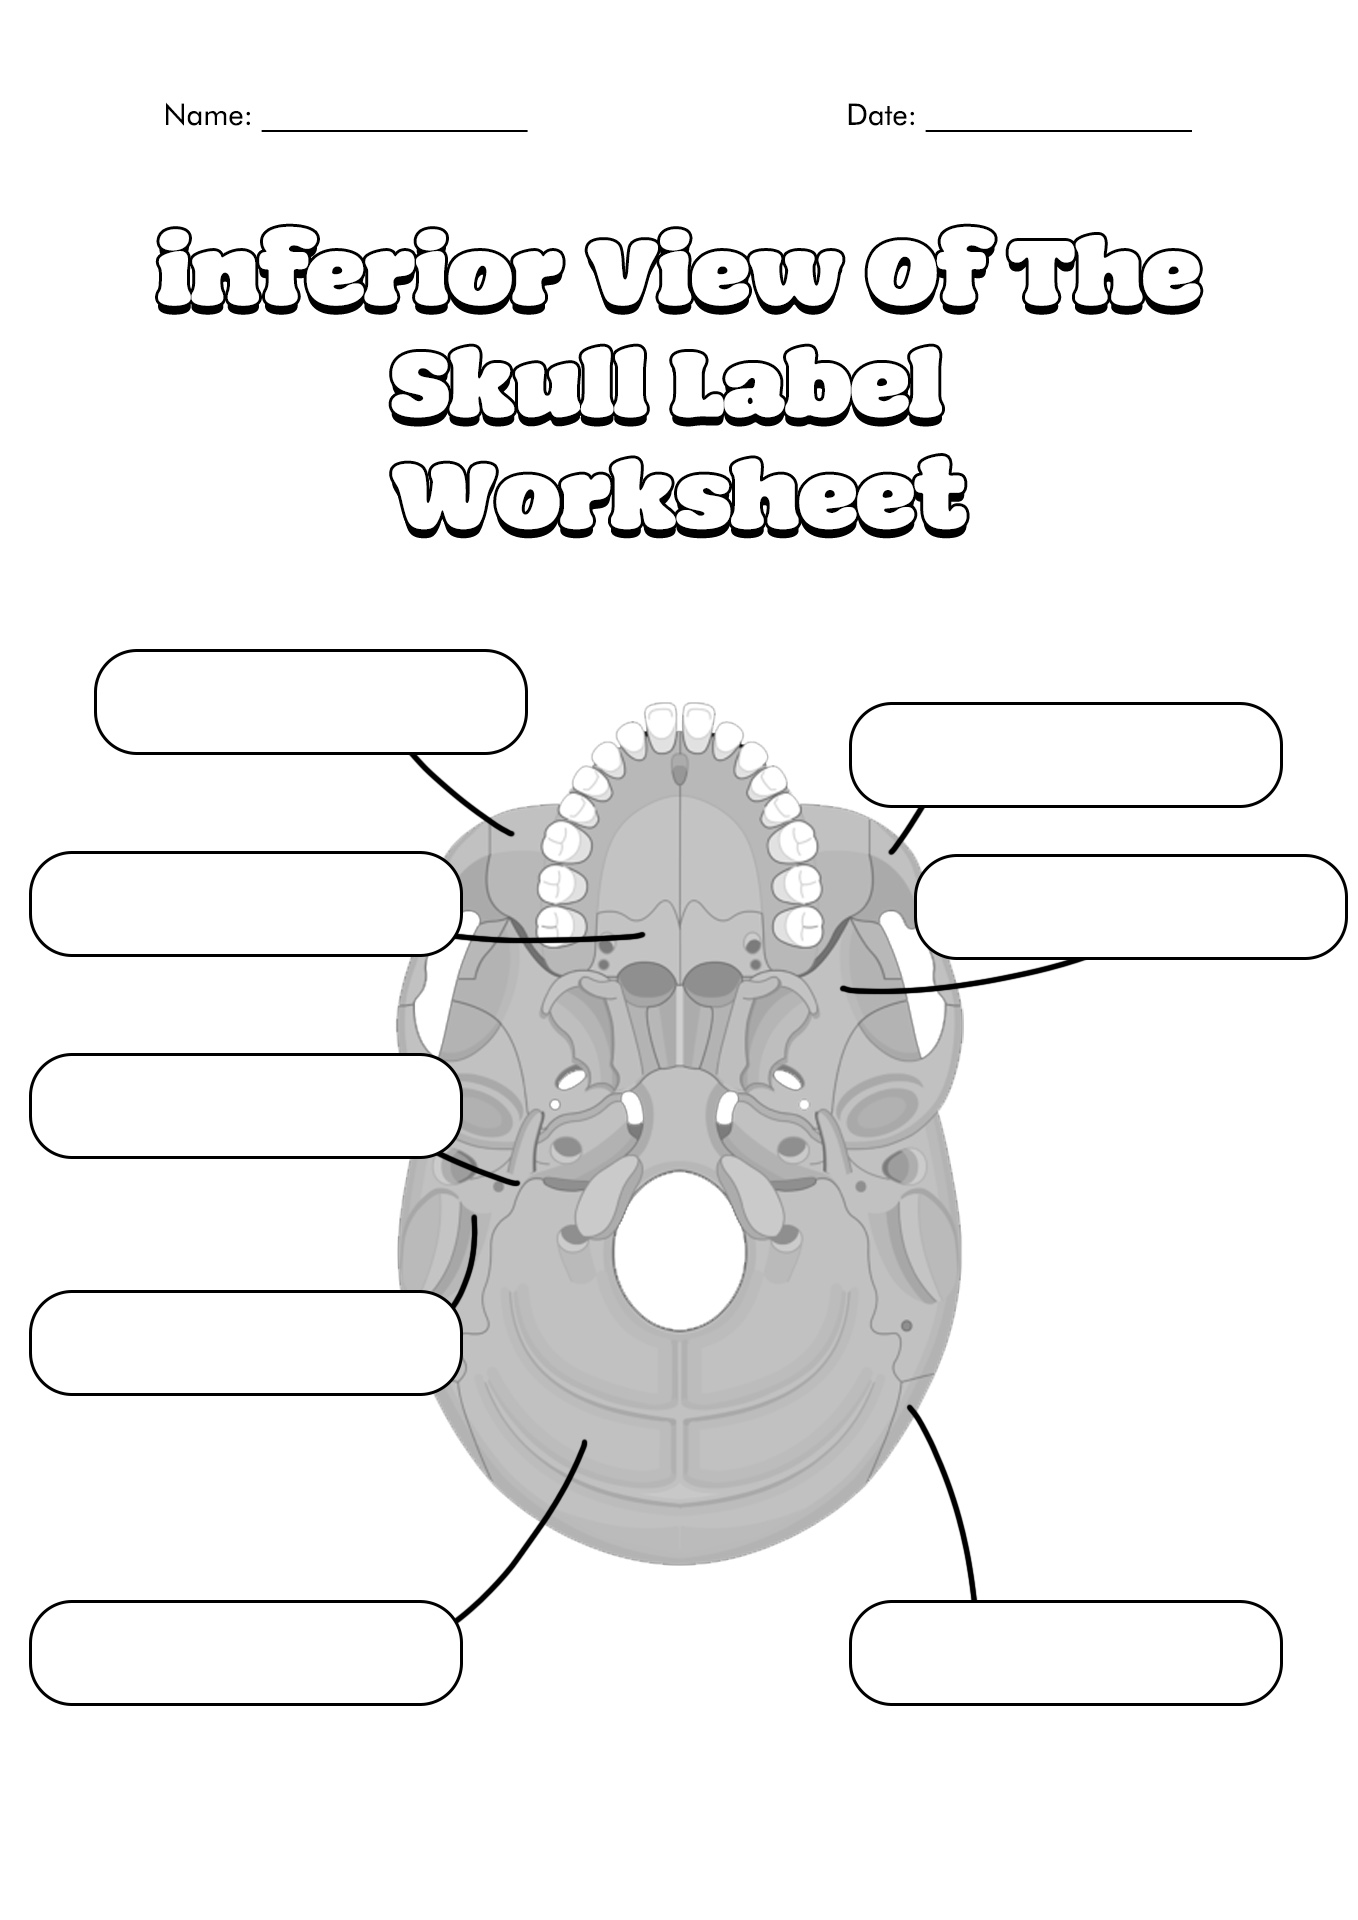 15 Best Images of Skull Labeling Worksheets - Skull Bones Unlabeled